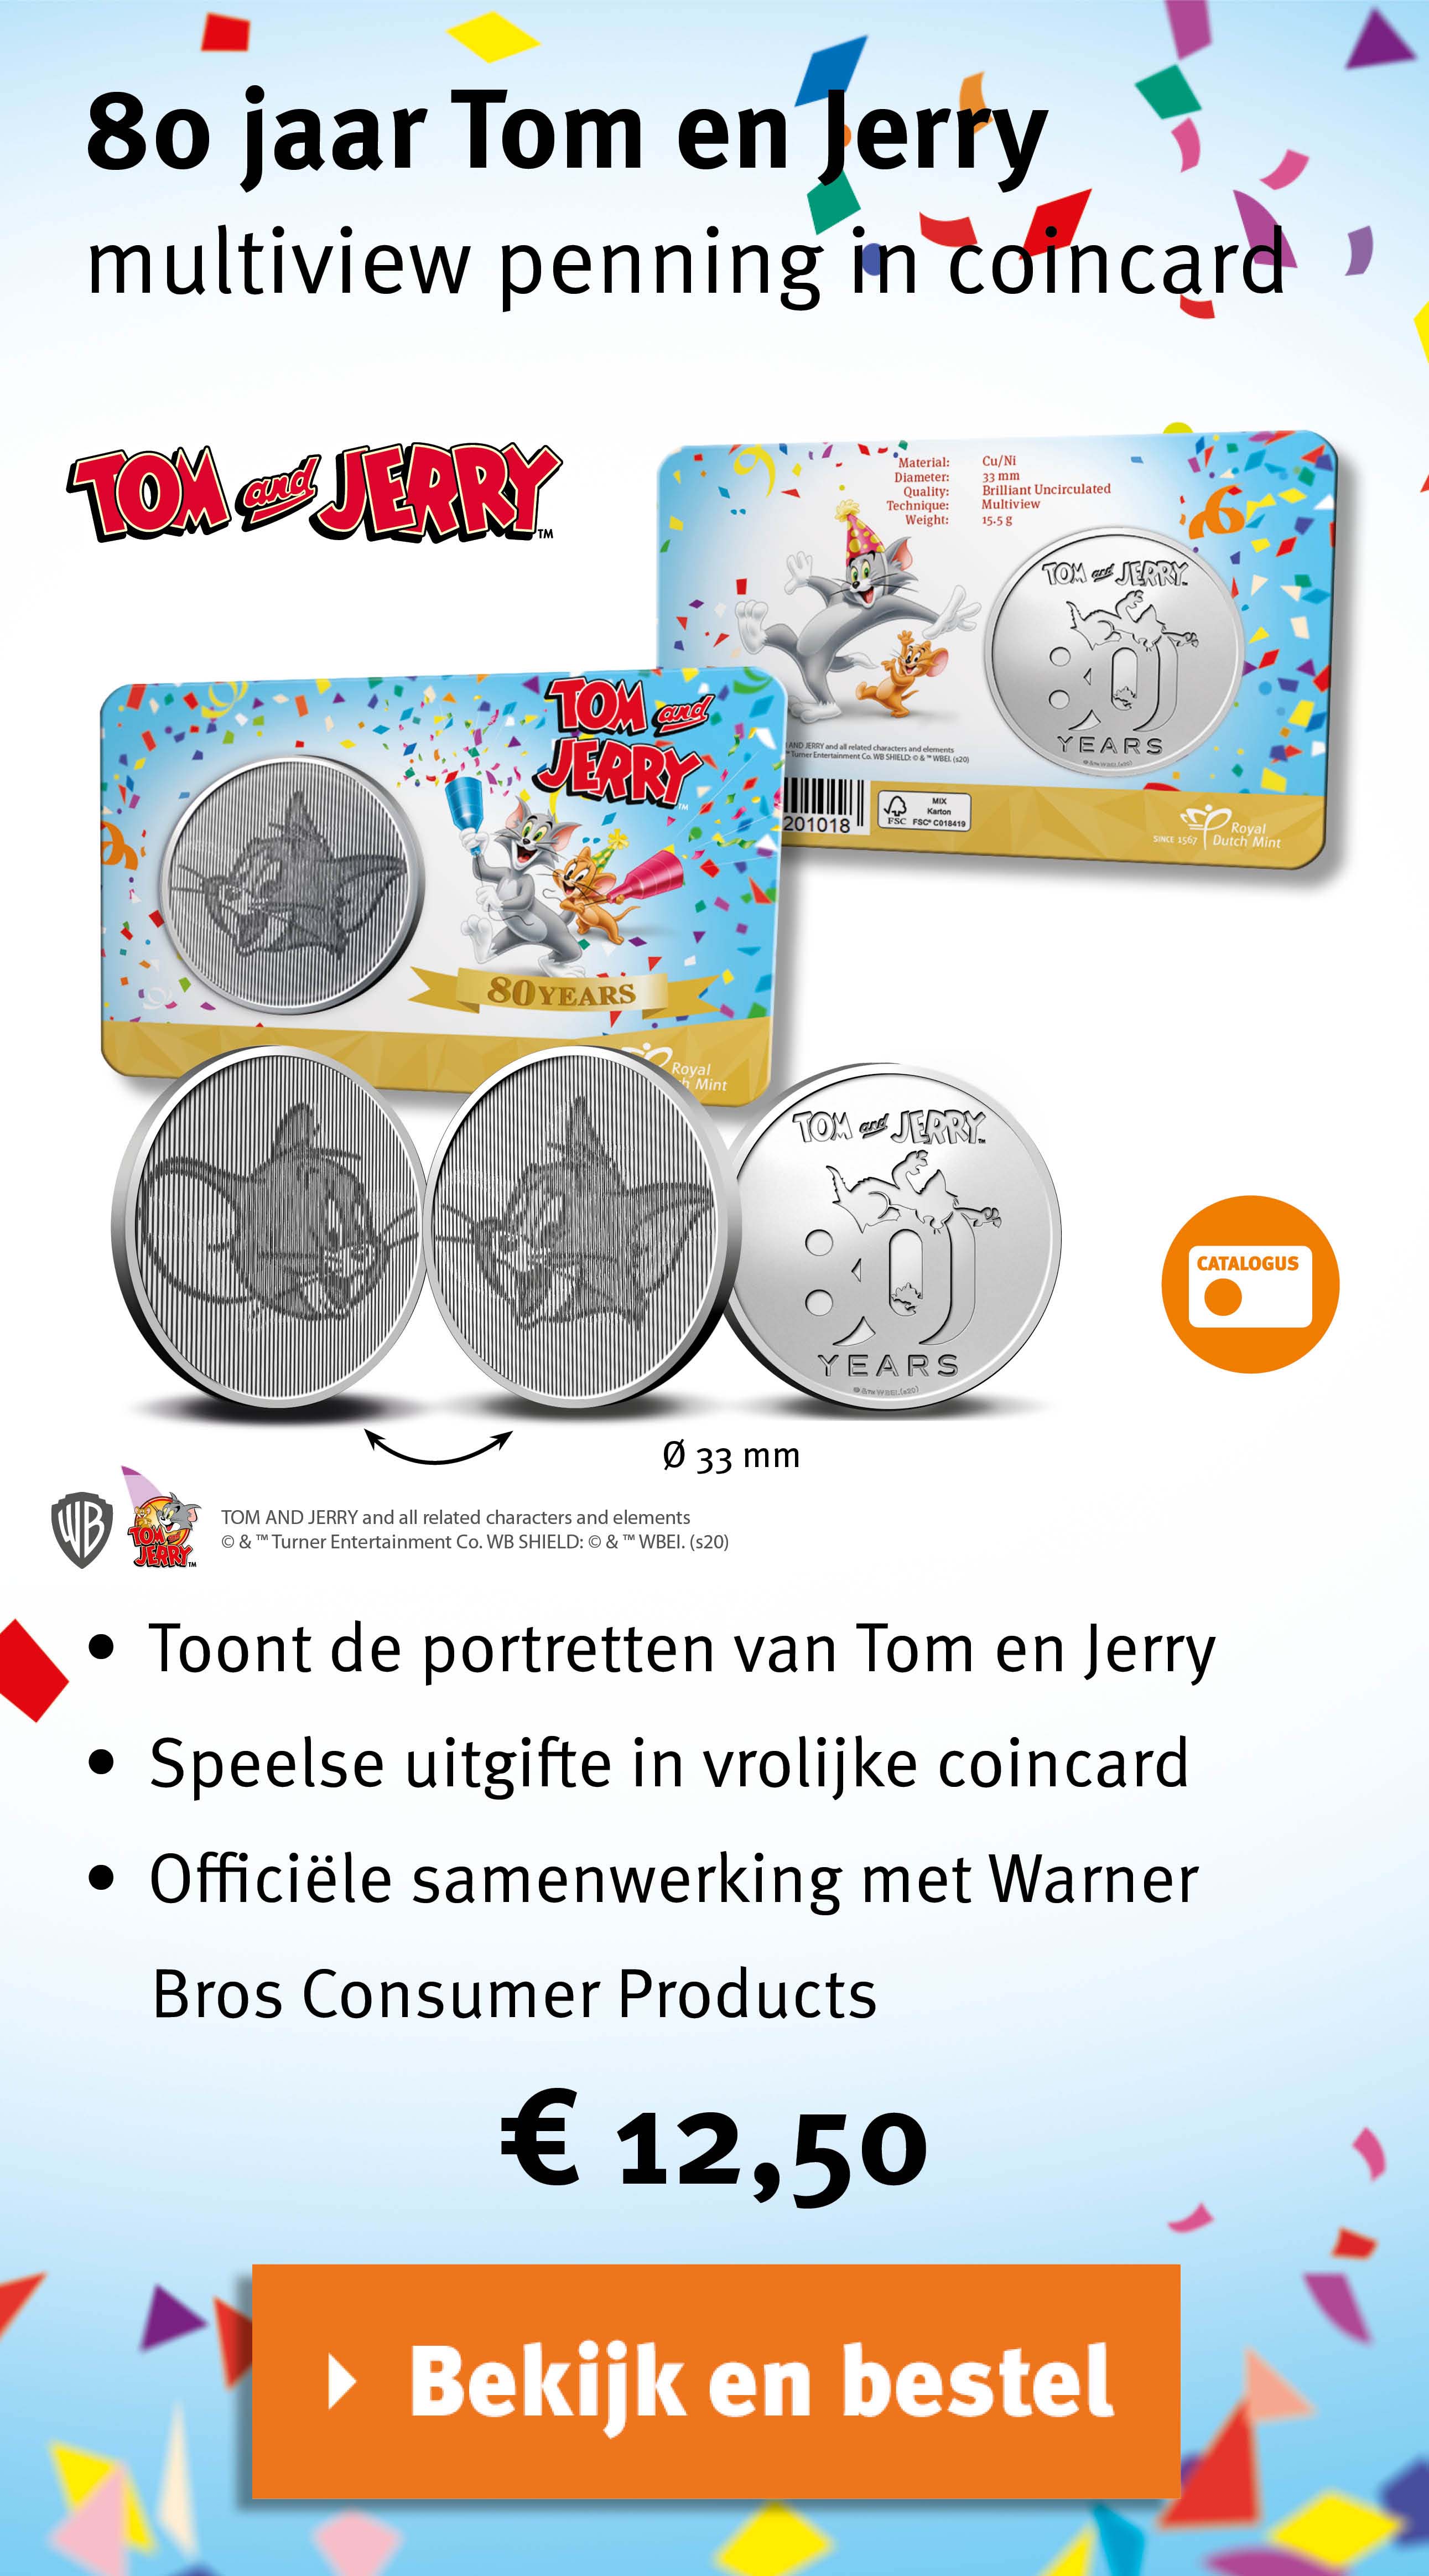 Bekijk en bestel: 80 jaar Tom en Jerry multiview penning in coincard